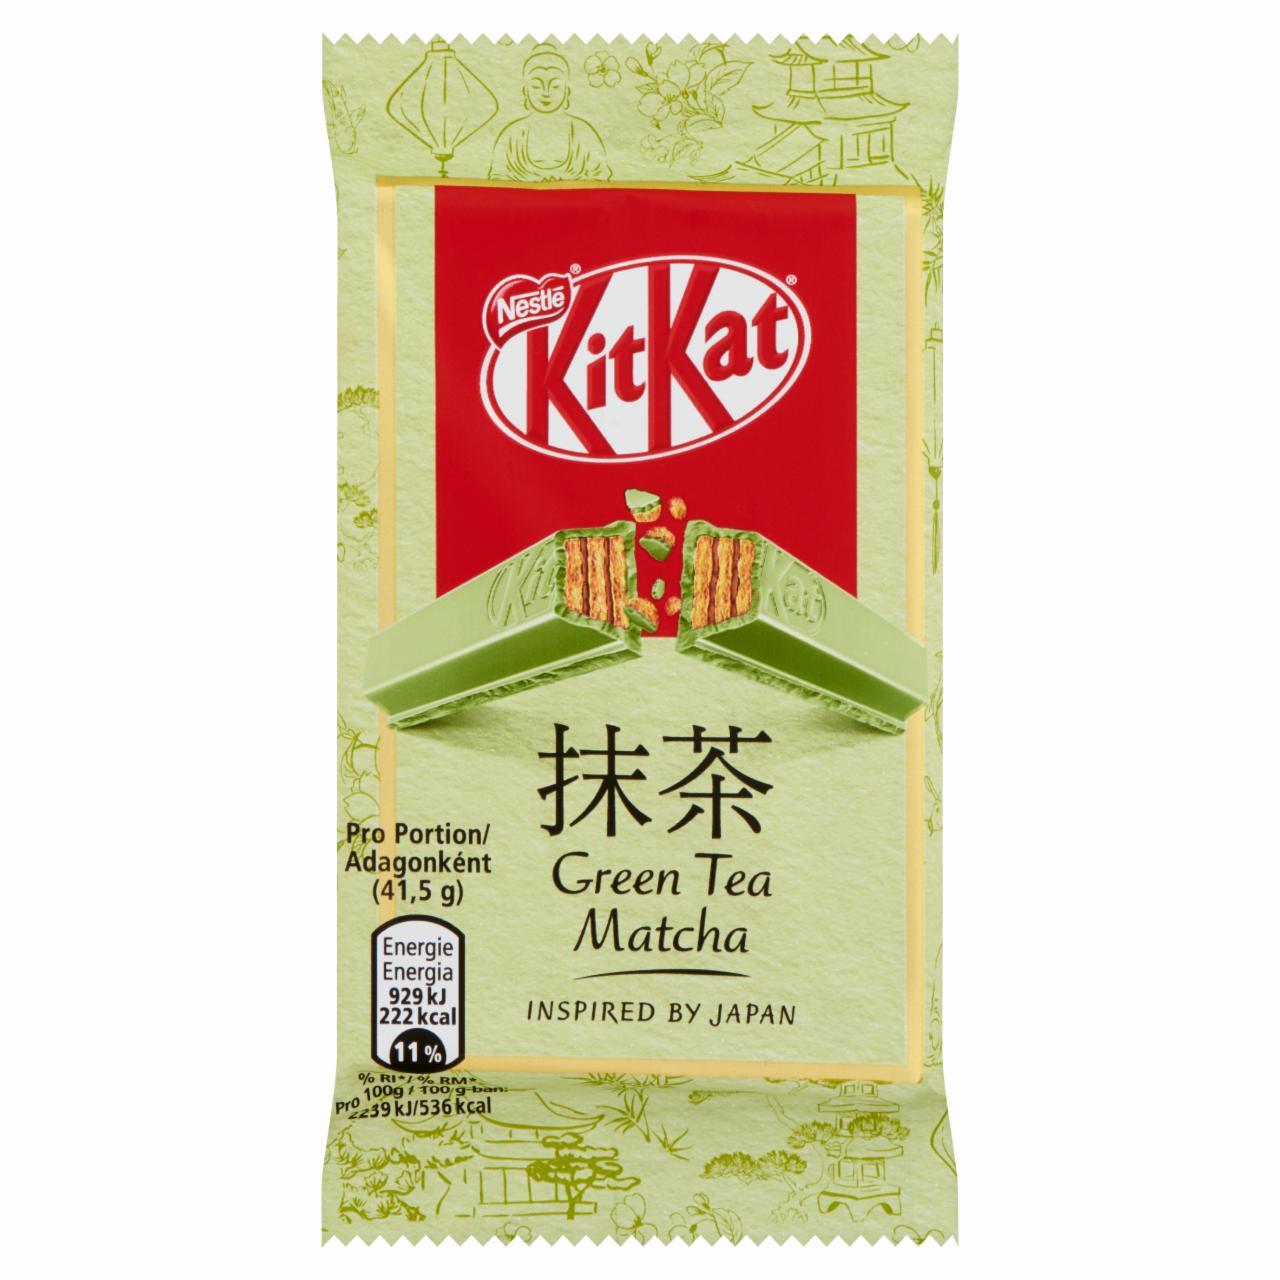 Képek - KitKat ropogós ostya matcha zöld teás fehér csokoládéban 41,5 g